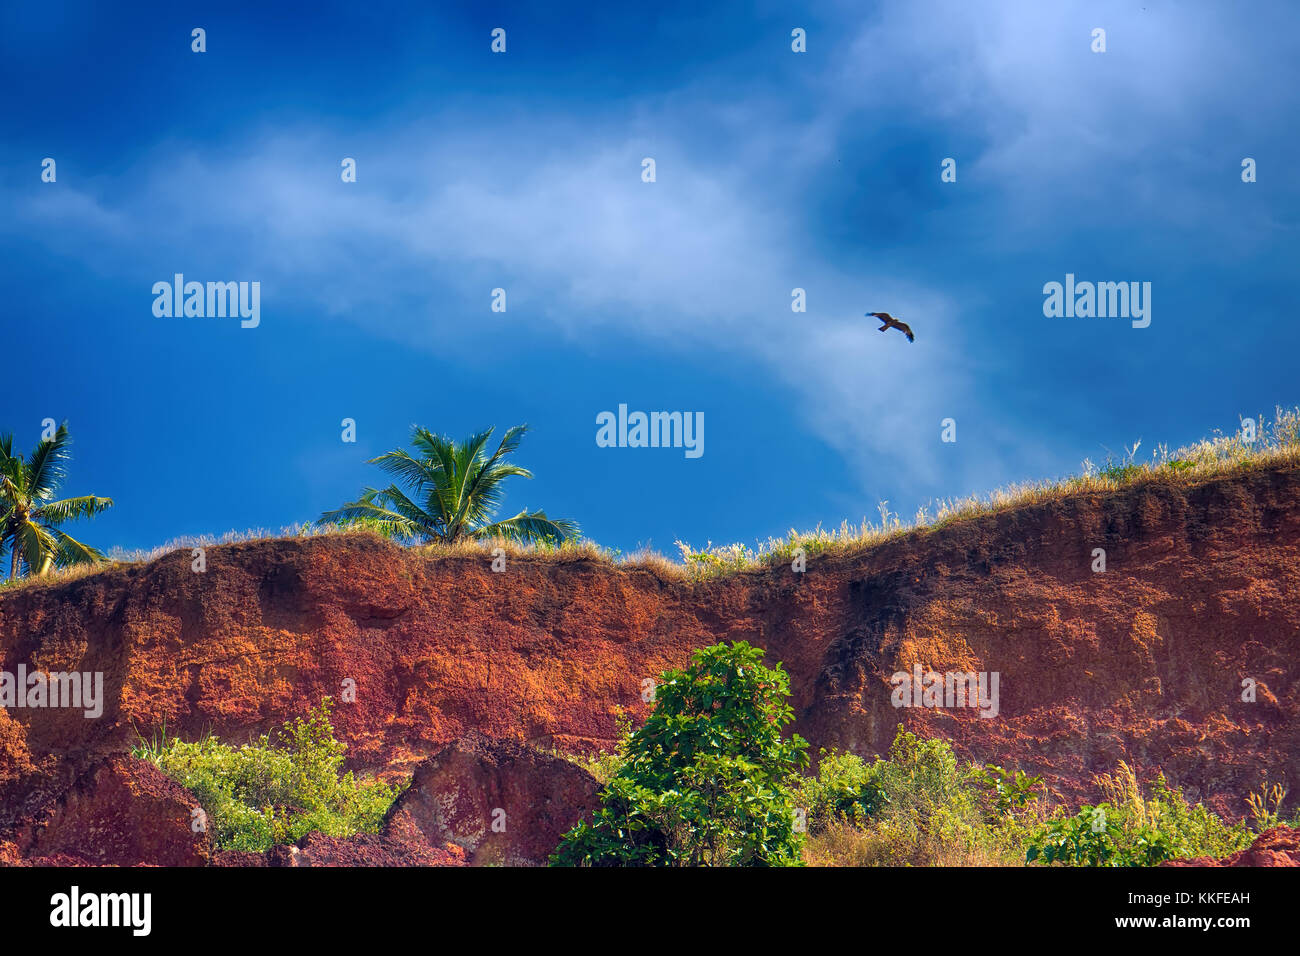 La côte à falaise mer. Un exemple de ciel intensément bleu au-dessus de falaise d'argile (phénomène de contraste de couleurs simultanées). palmiers poussent sur le bord du golfe Persique. s. Banque D'Images